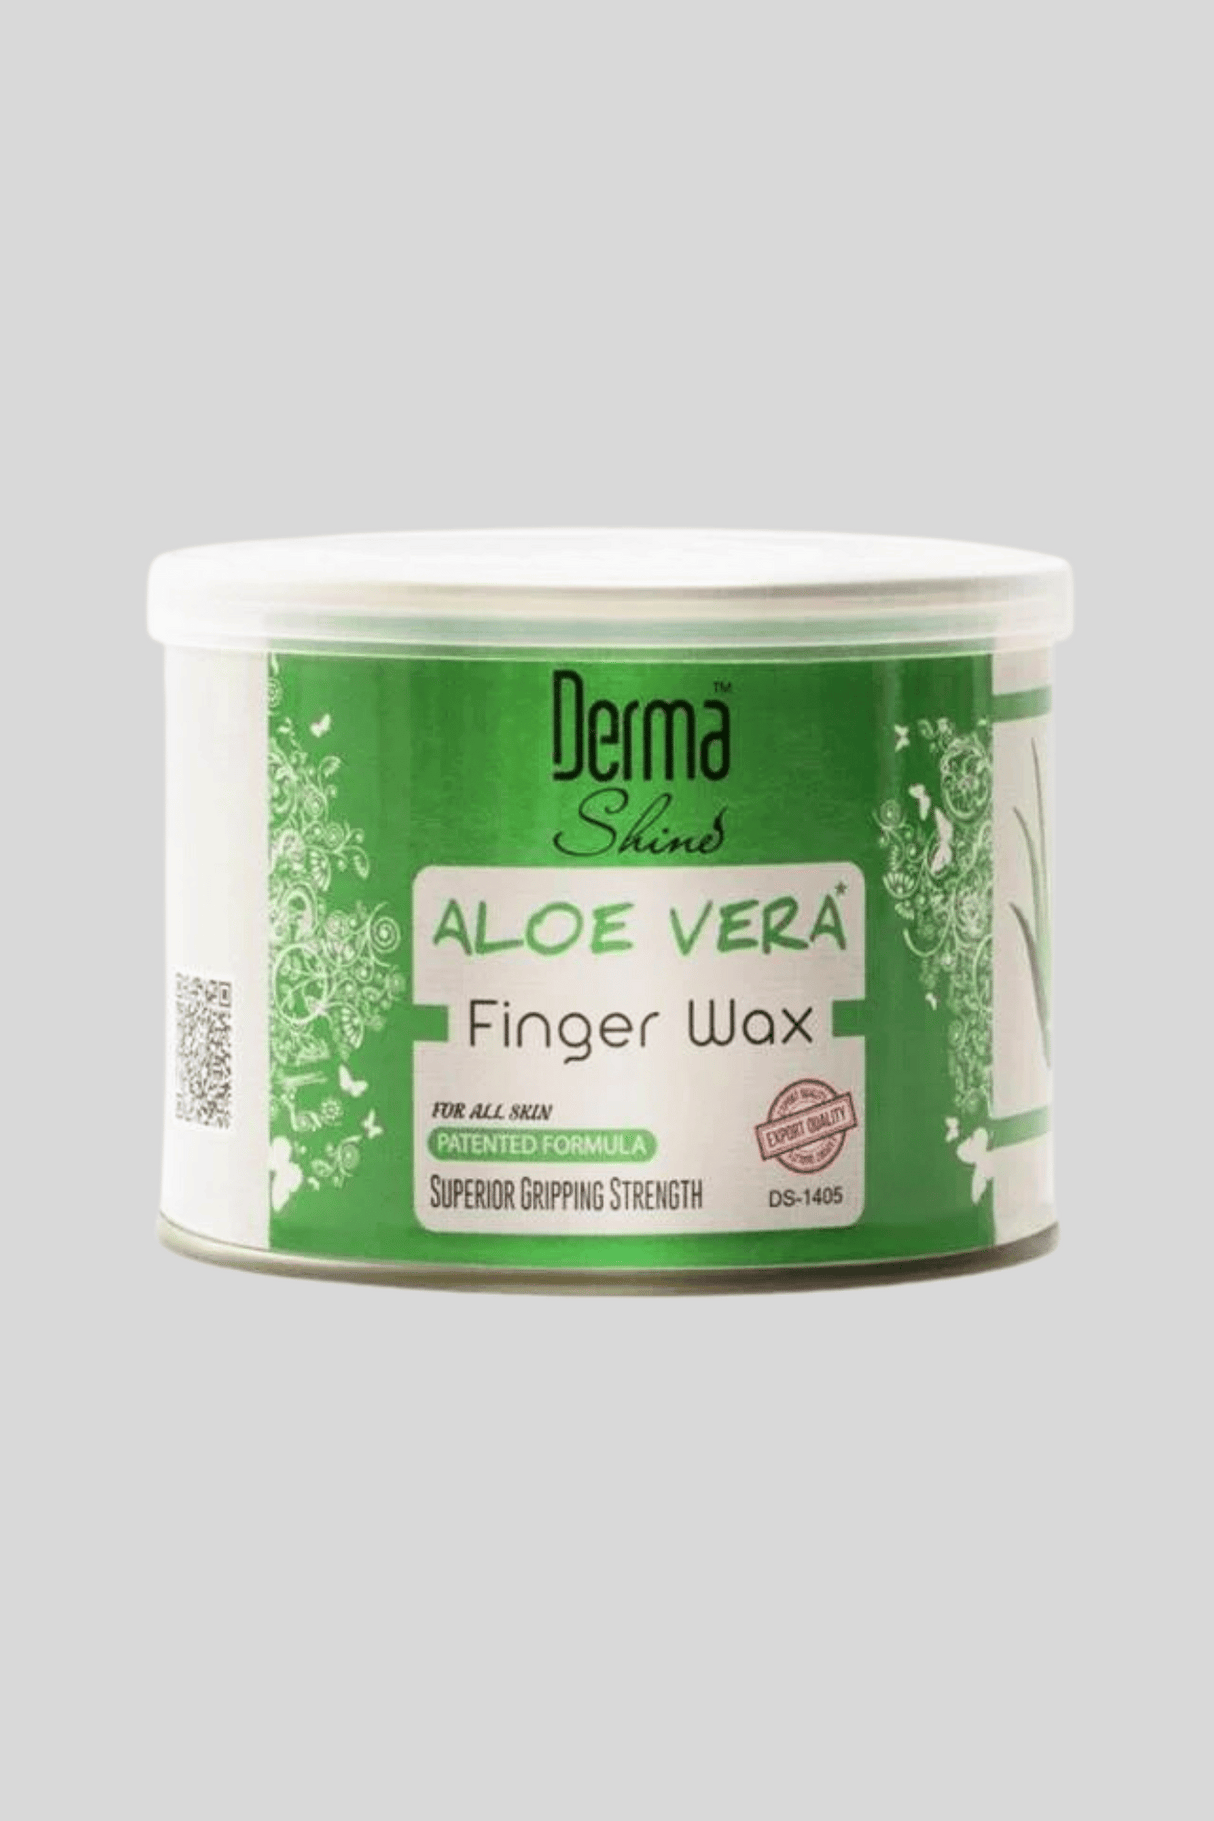 derma shine finger wax aloe vera 250g